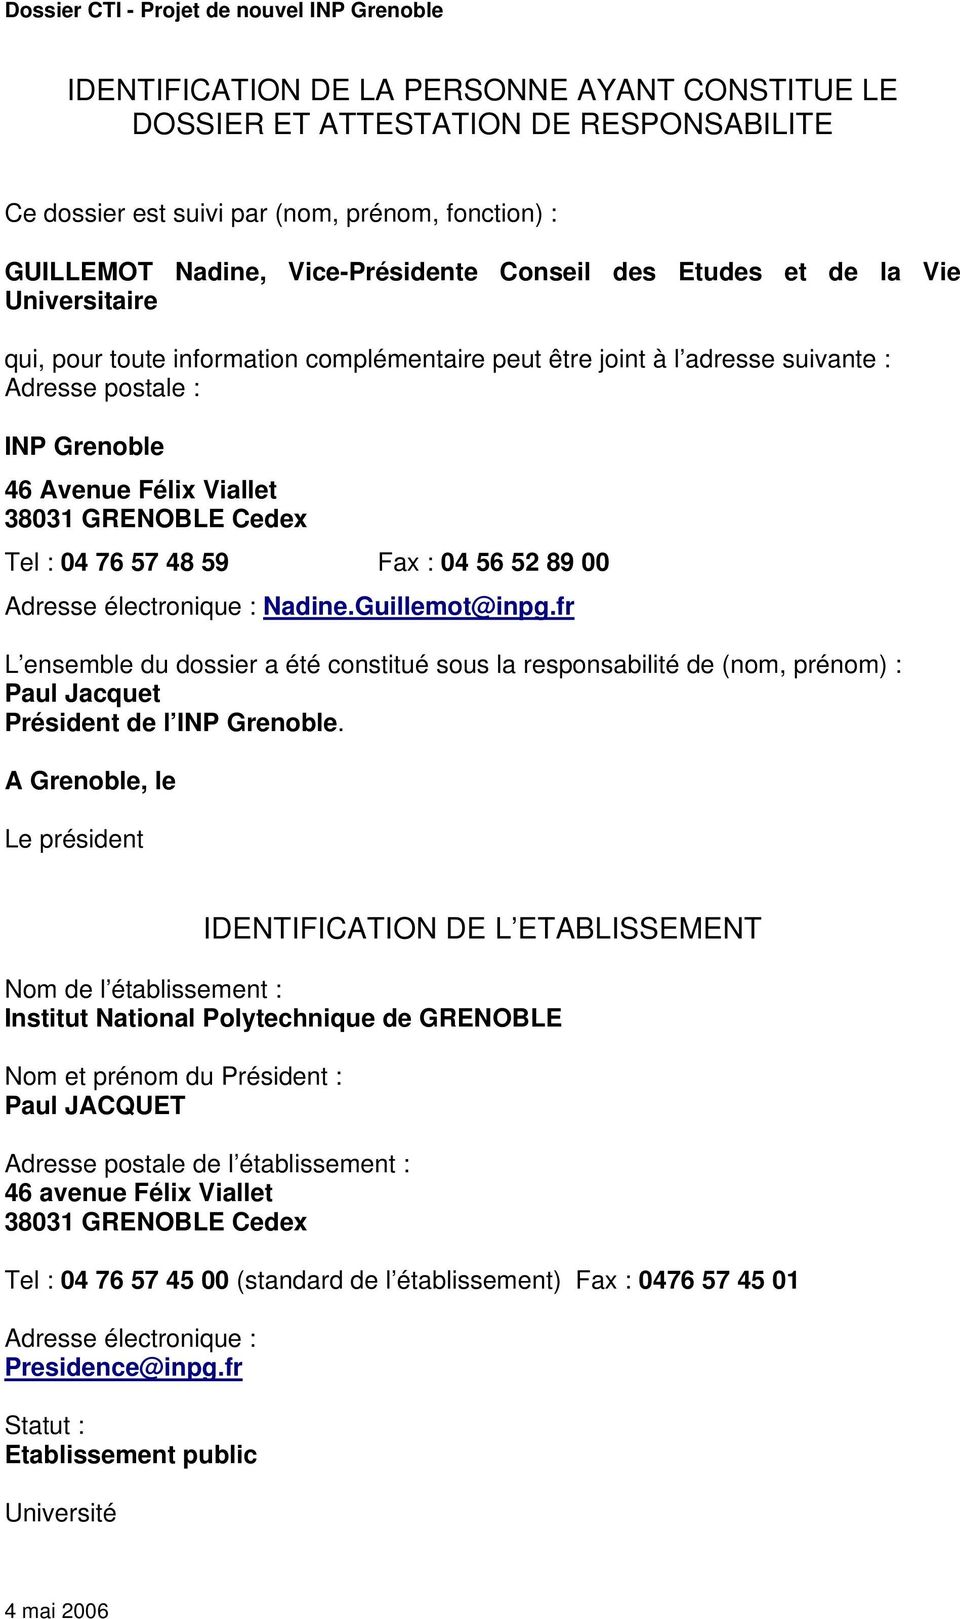 Fax : 04 56 52 89 00 Adresse électronique : 0HTUNadine.Guillemot@inpg.frUTH L ensemble du dossier a été constitué sous la responsabilité de (nom, prénom) : Paul Jacquet Président de l INP Grenoble.